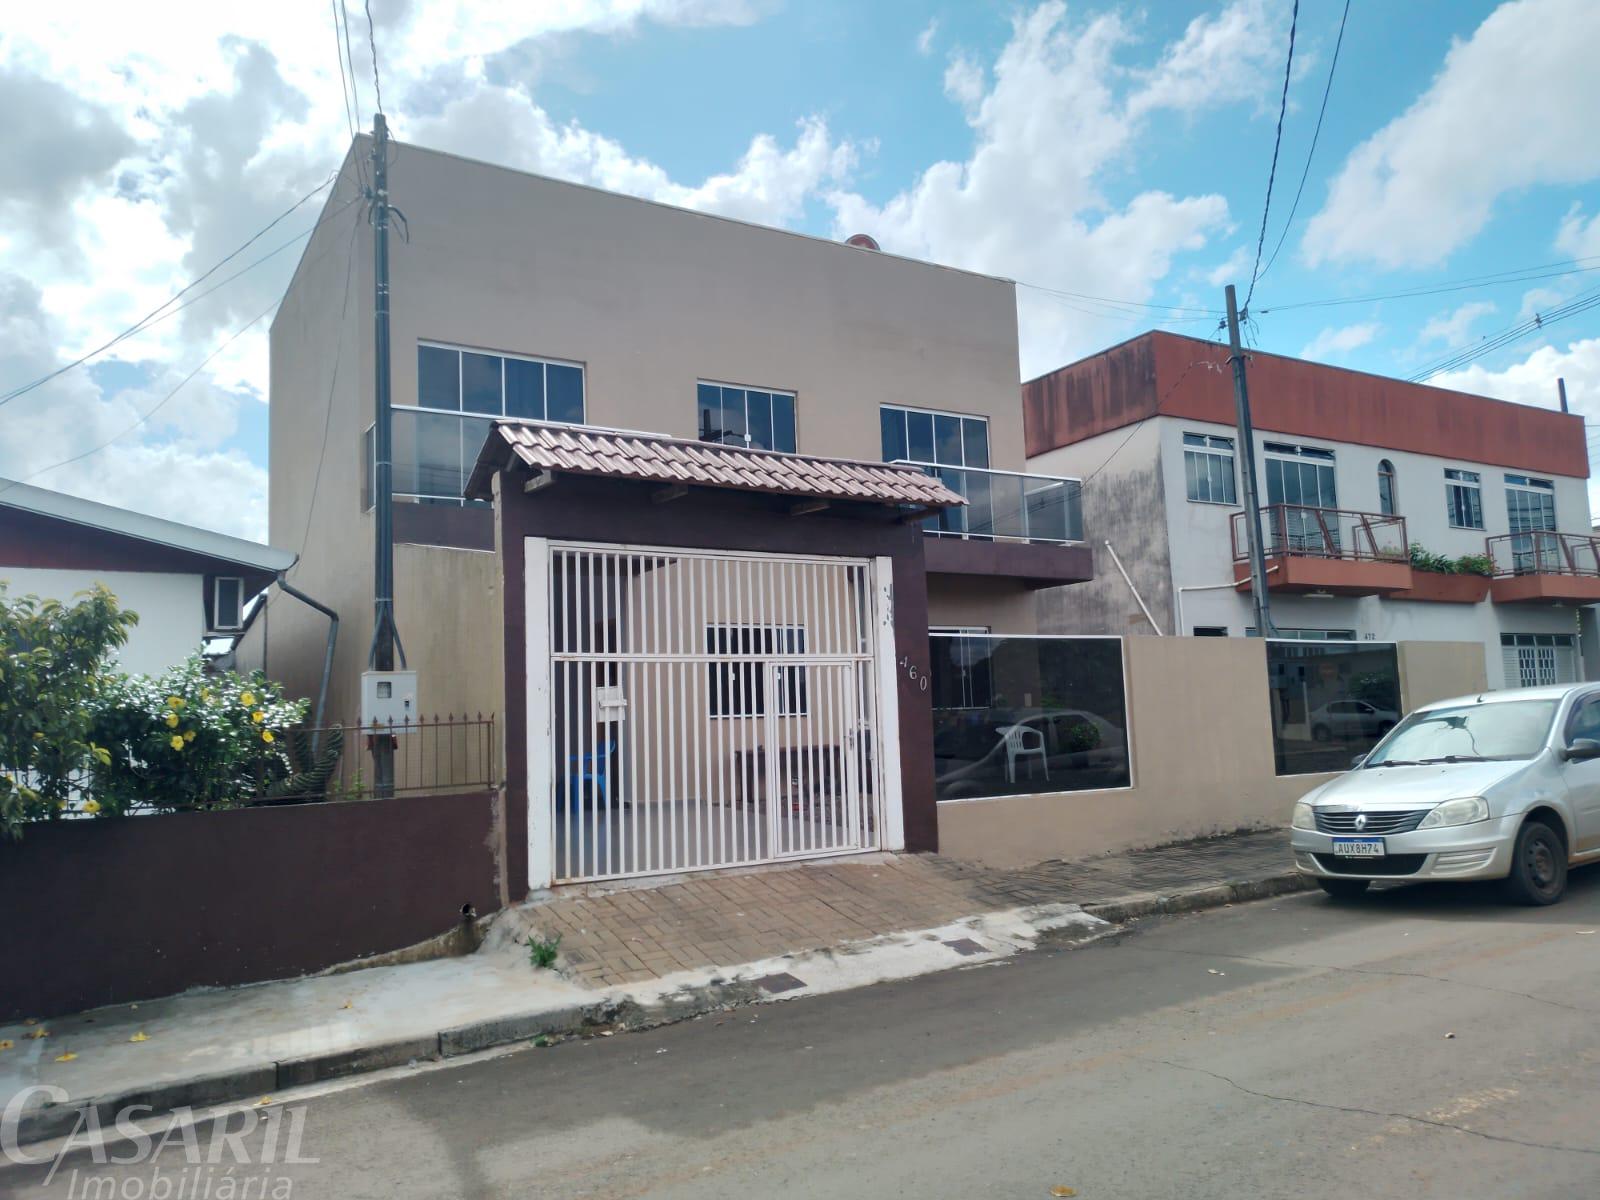 Sobrado Com 3 Dormitórios À Venda, Guanabara, Francisco Beltrao - Pr